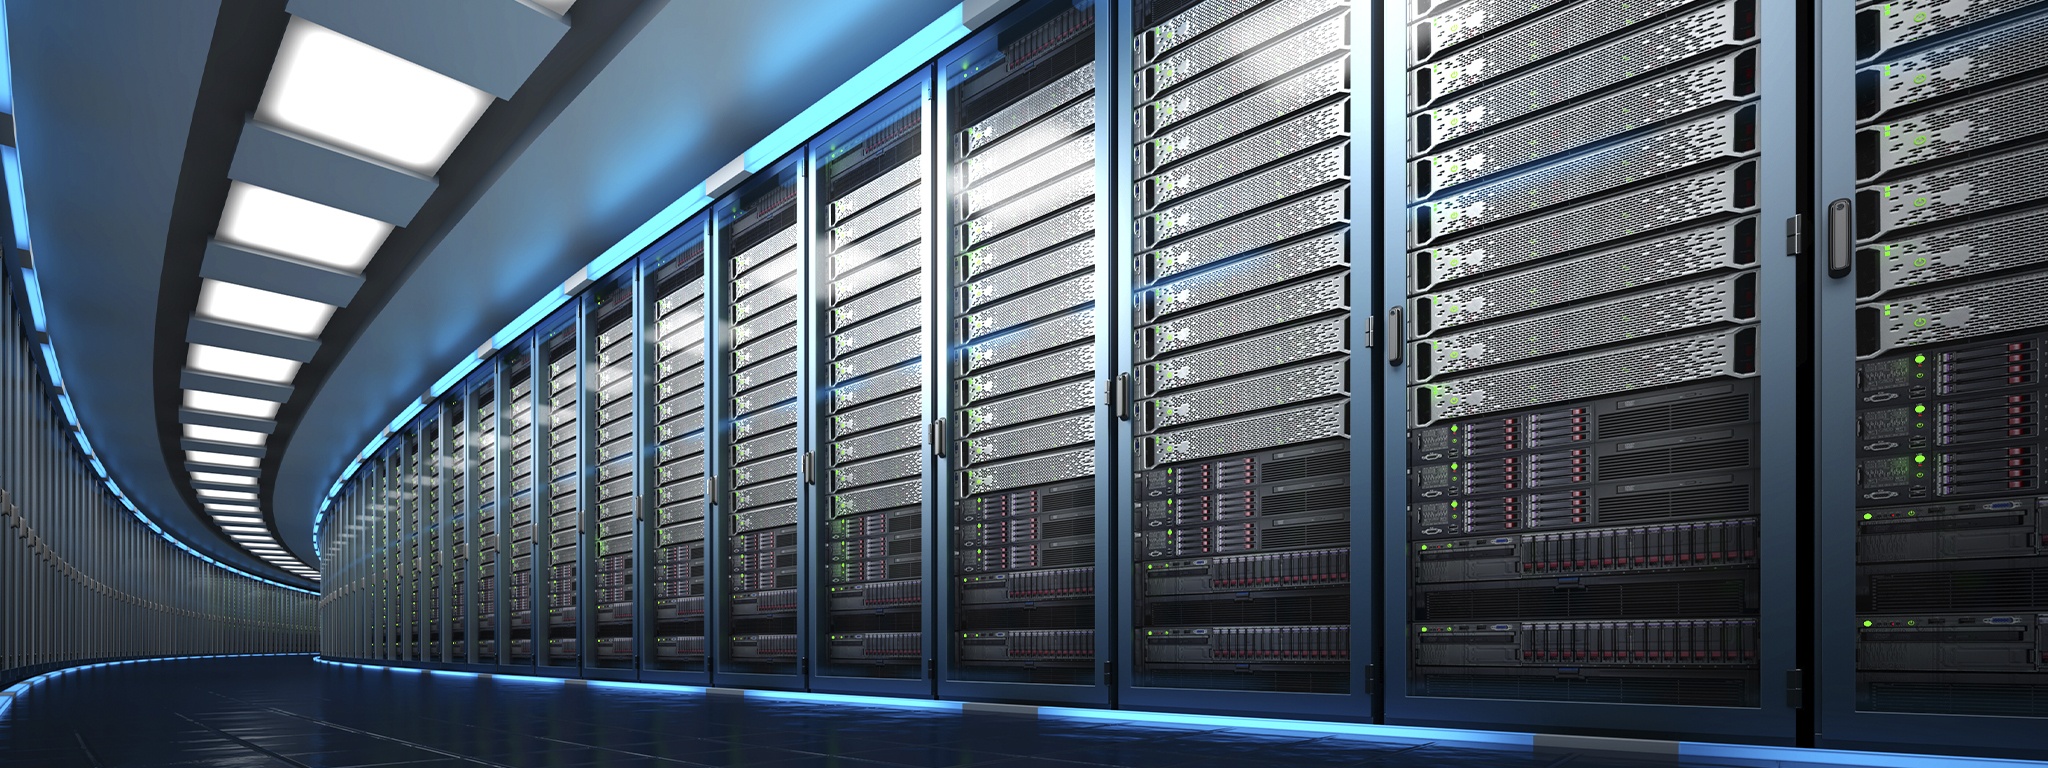 Rendering 3D pusat data yang menunjukkan ruang server besar dengan barisan panjang unit rak server